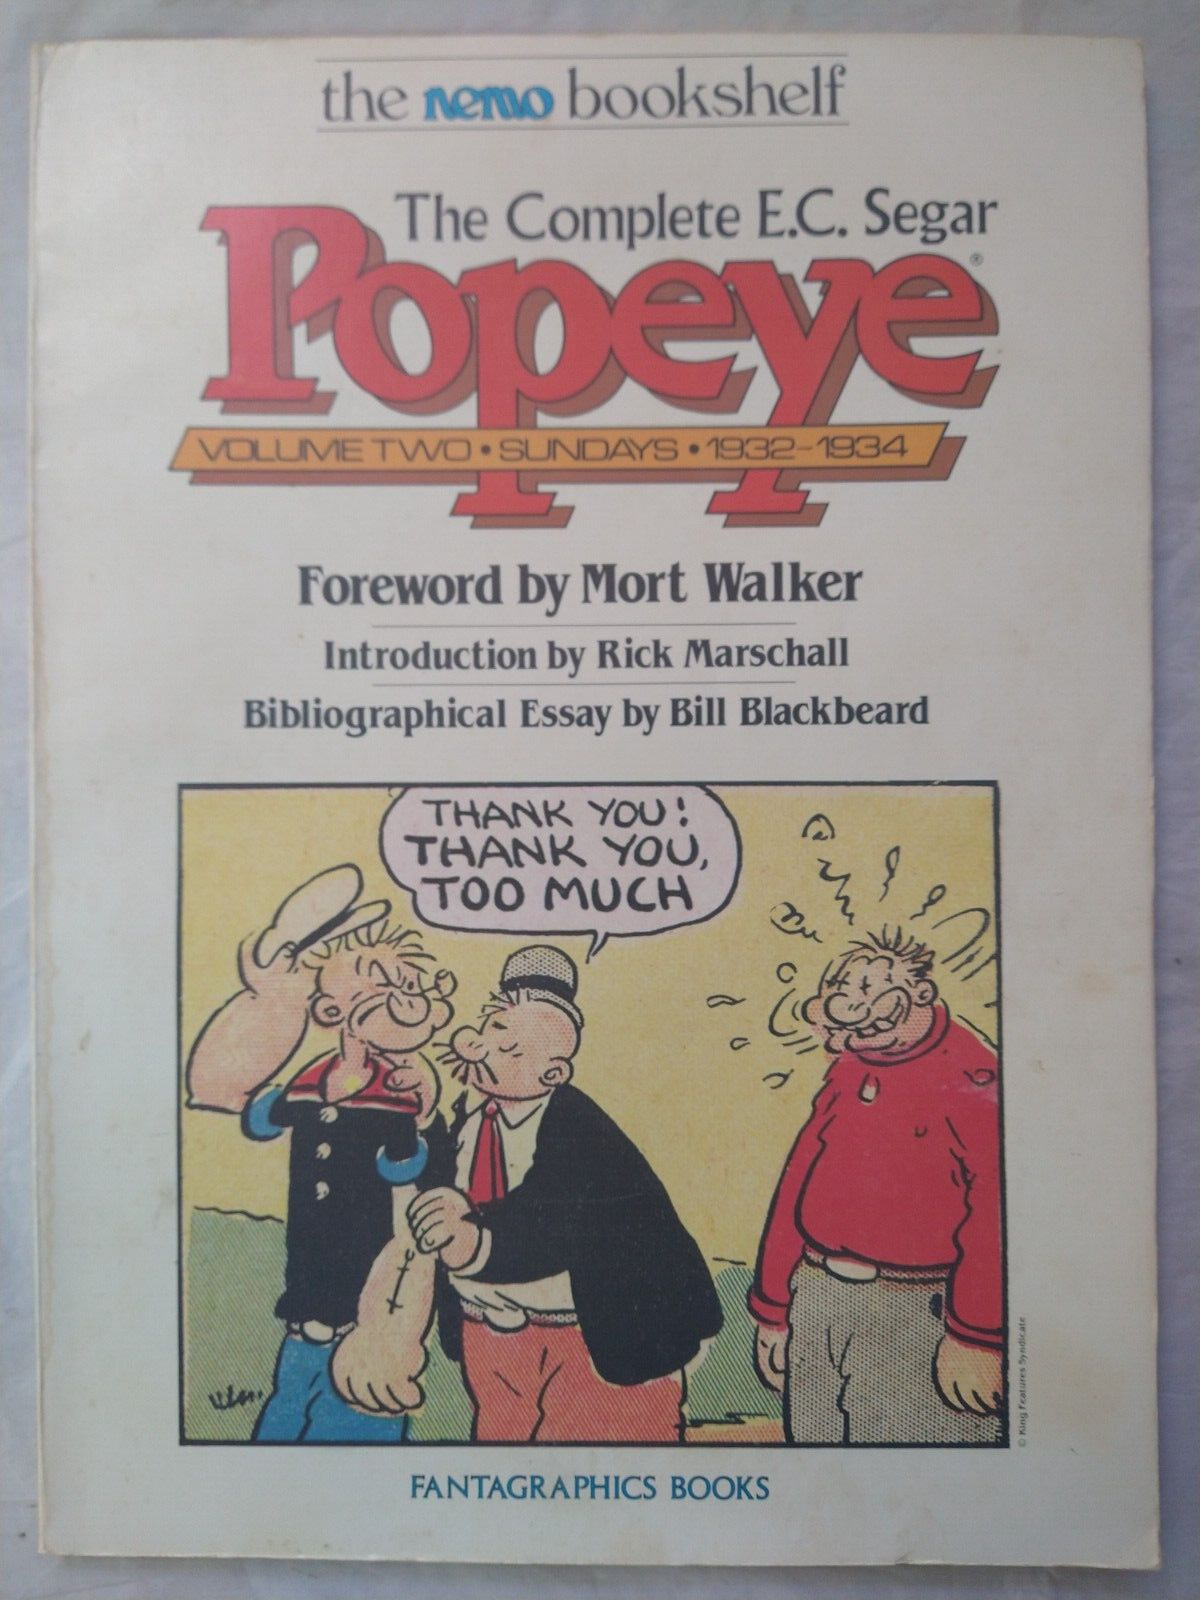 The Complete E.C. Segar Popeye Volume Two: 1932-1934 Fantagraphics Books